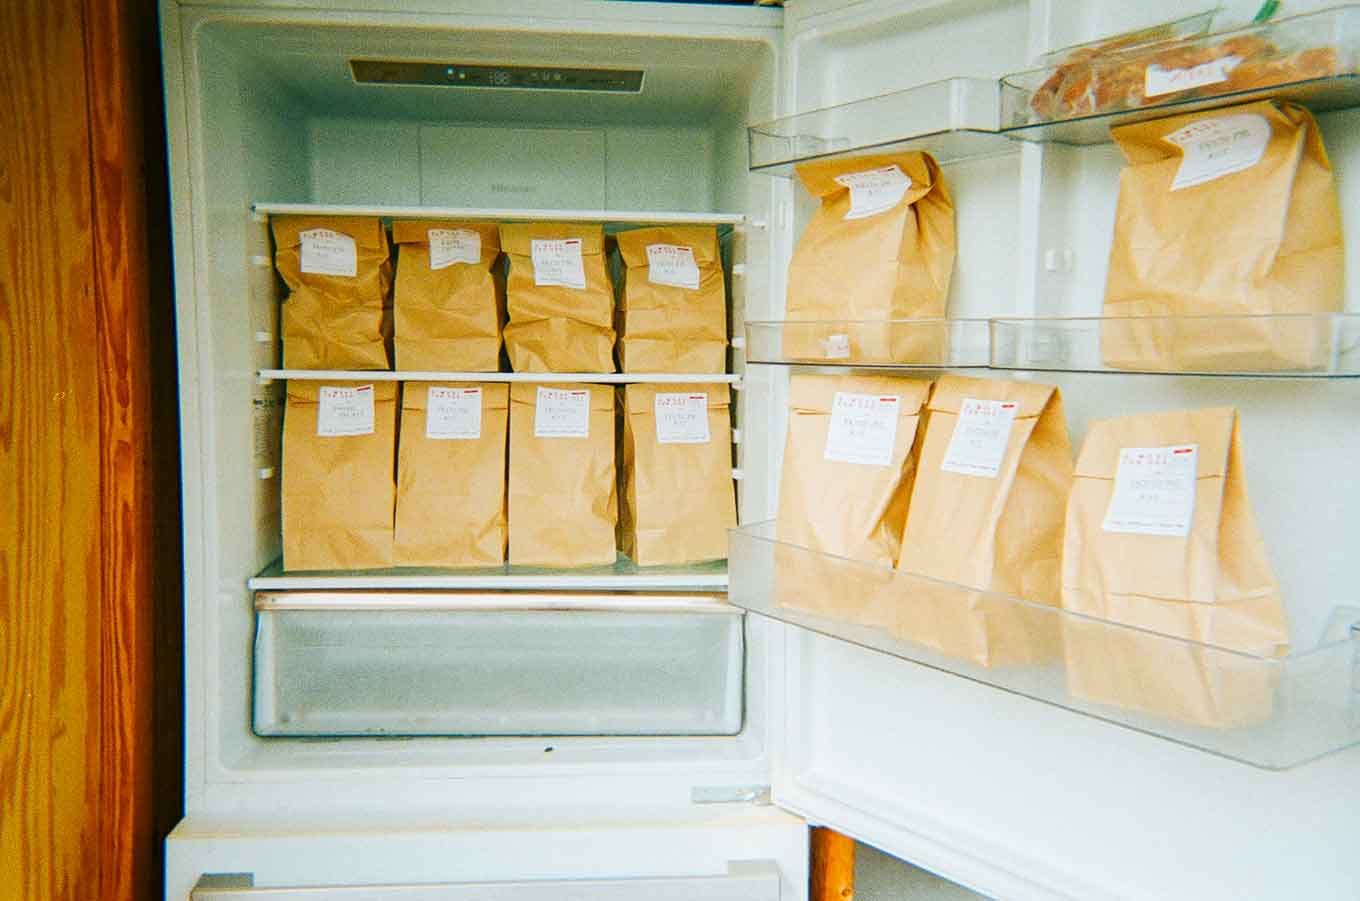 A fridge full of brown paper bags